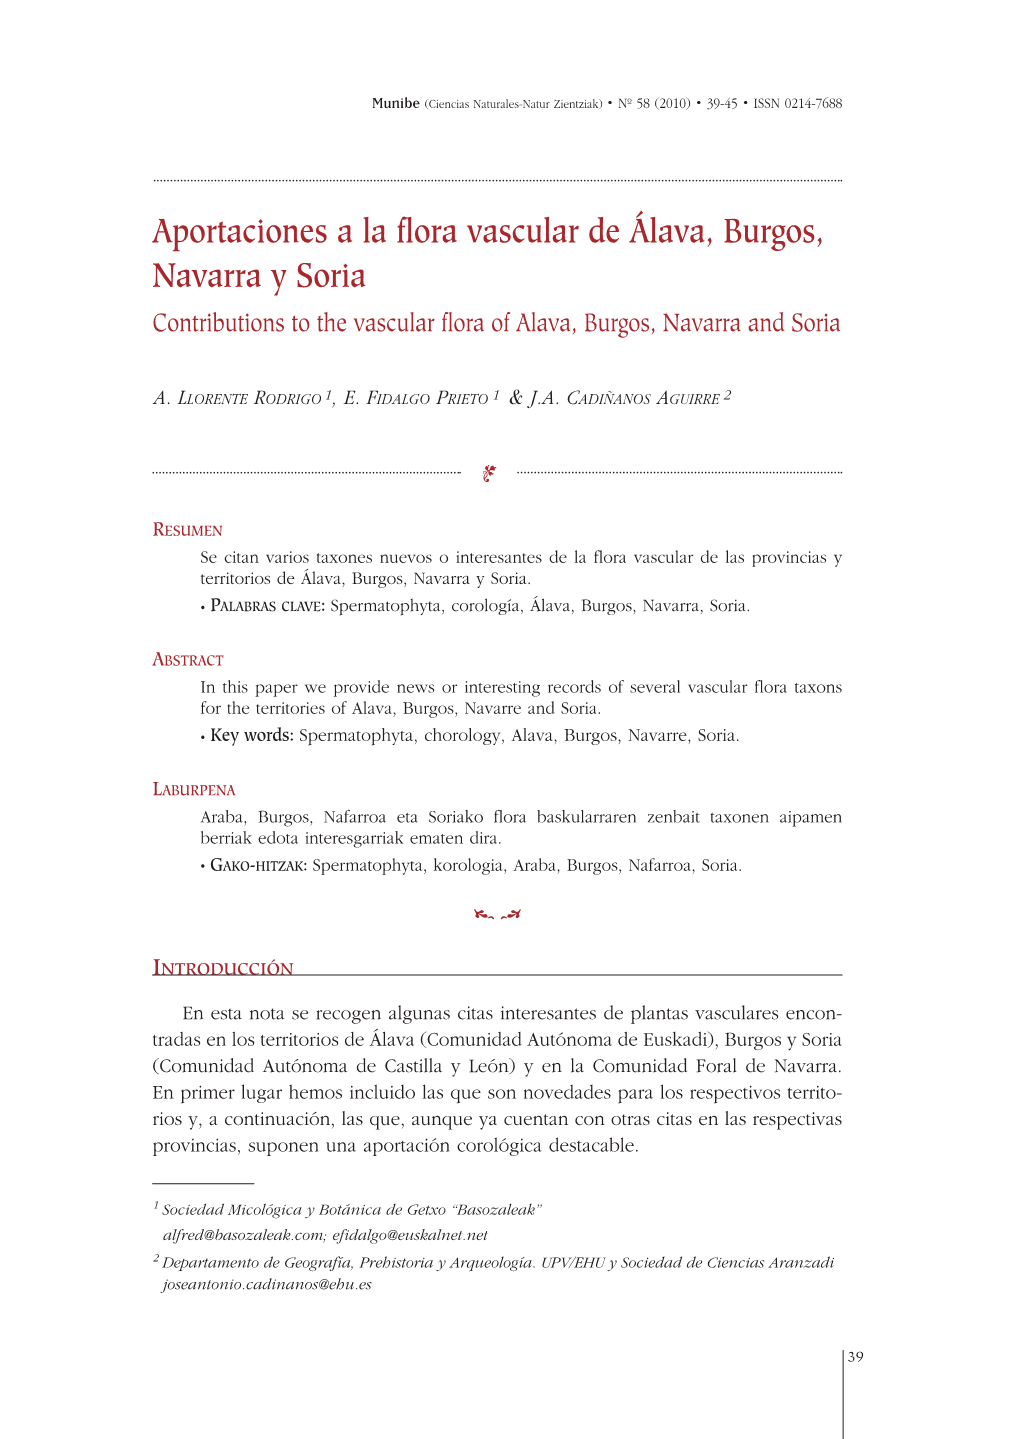 Aportaciones a La Flora Vascular De Álava, Burgos, Navarra Y Soria Contributions to the Vascular Flora of Alava, Burgos, Navarra and Soria